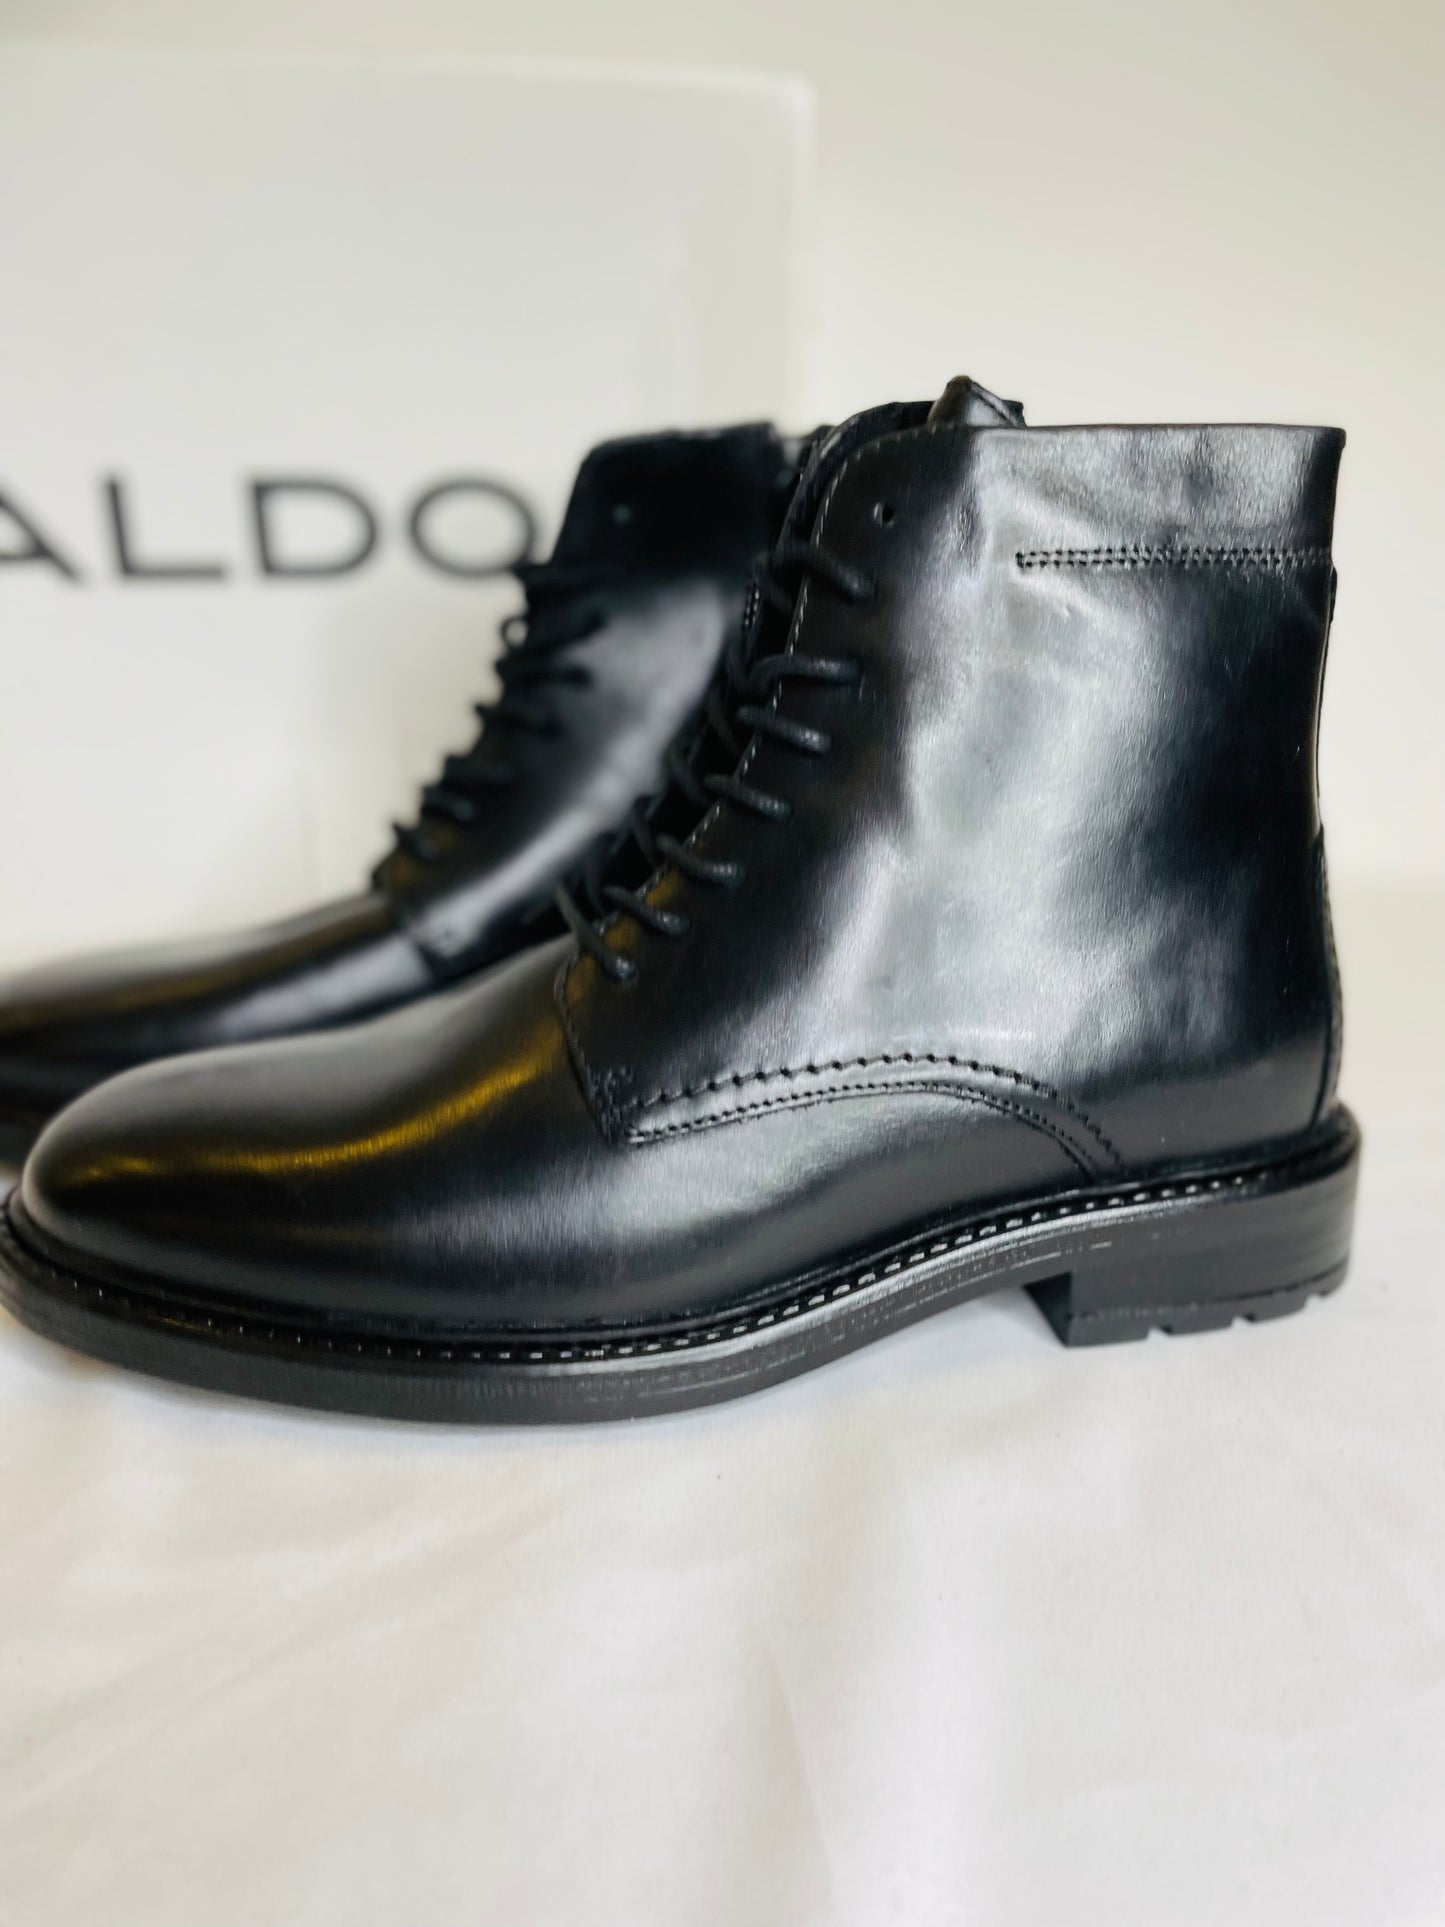 Aldo boots size 40